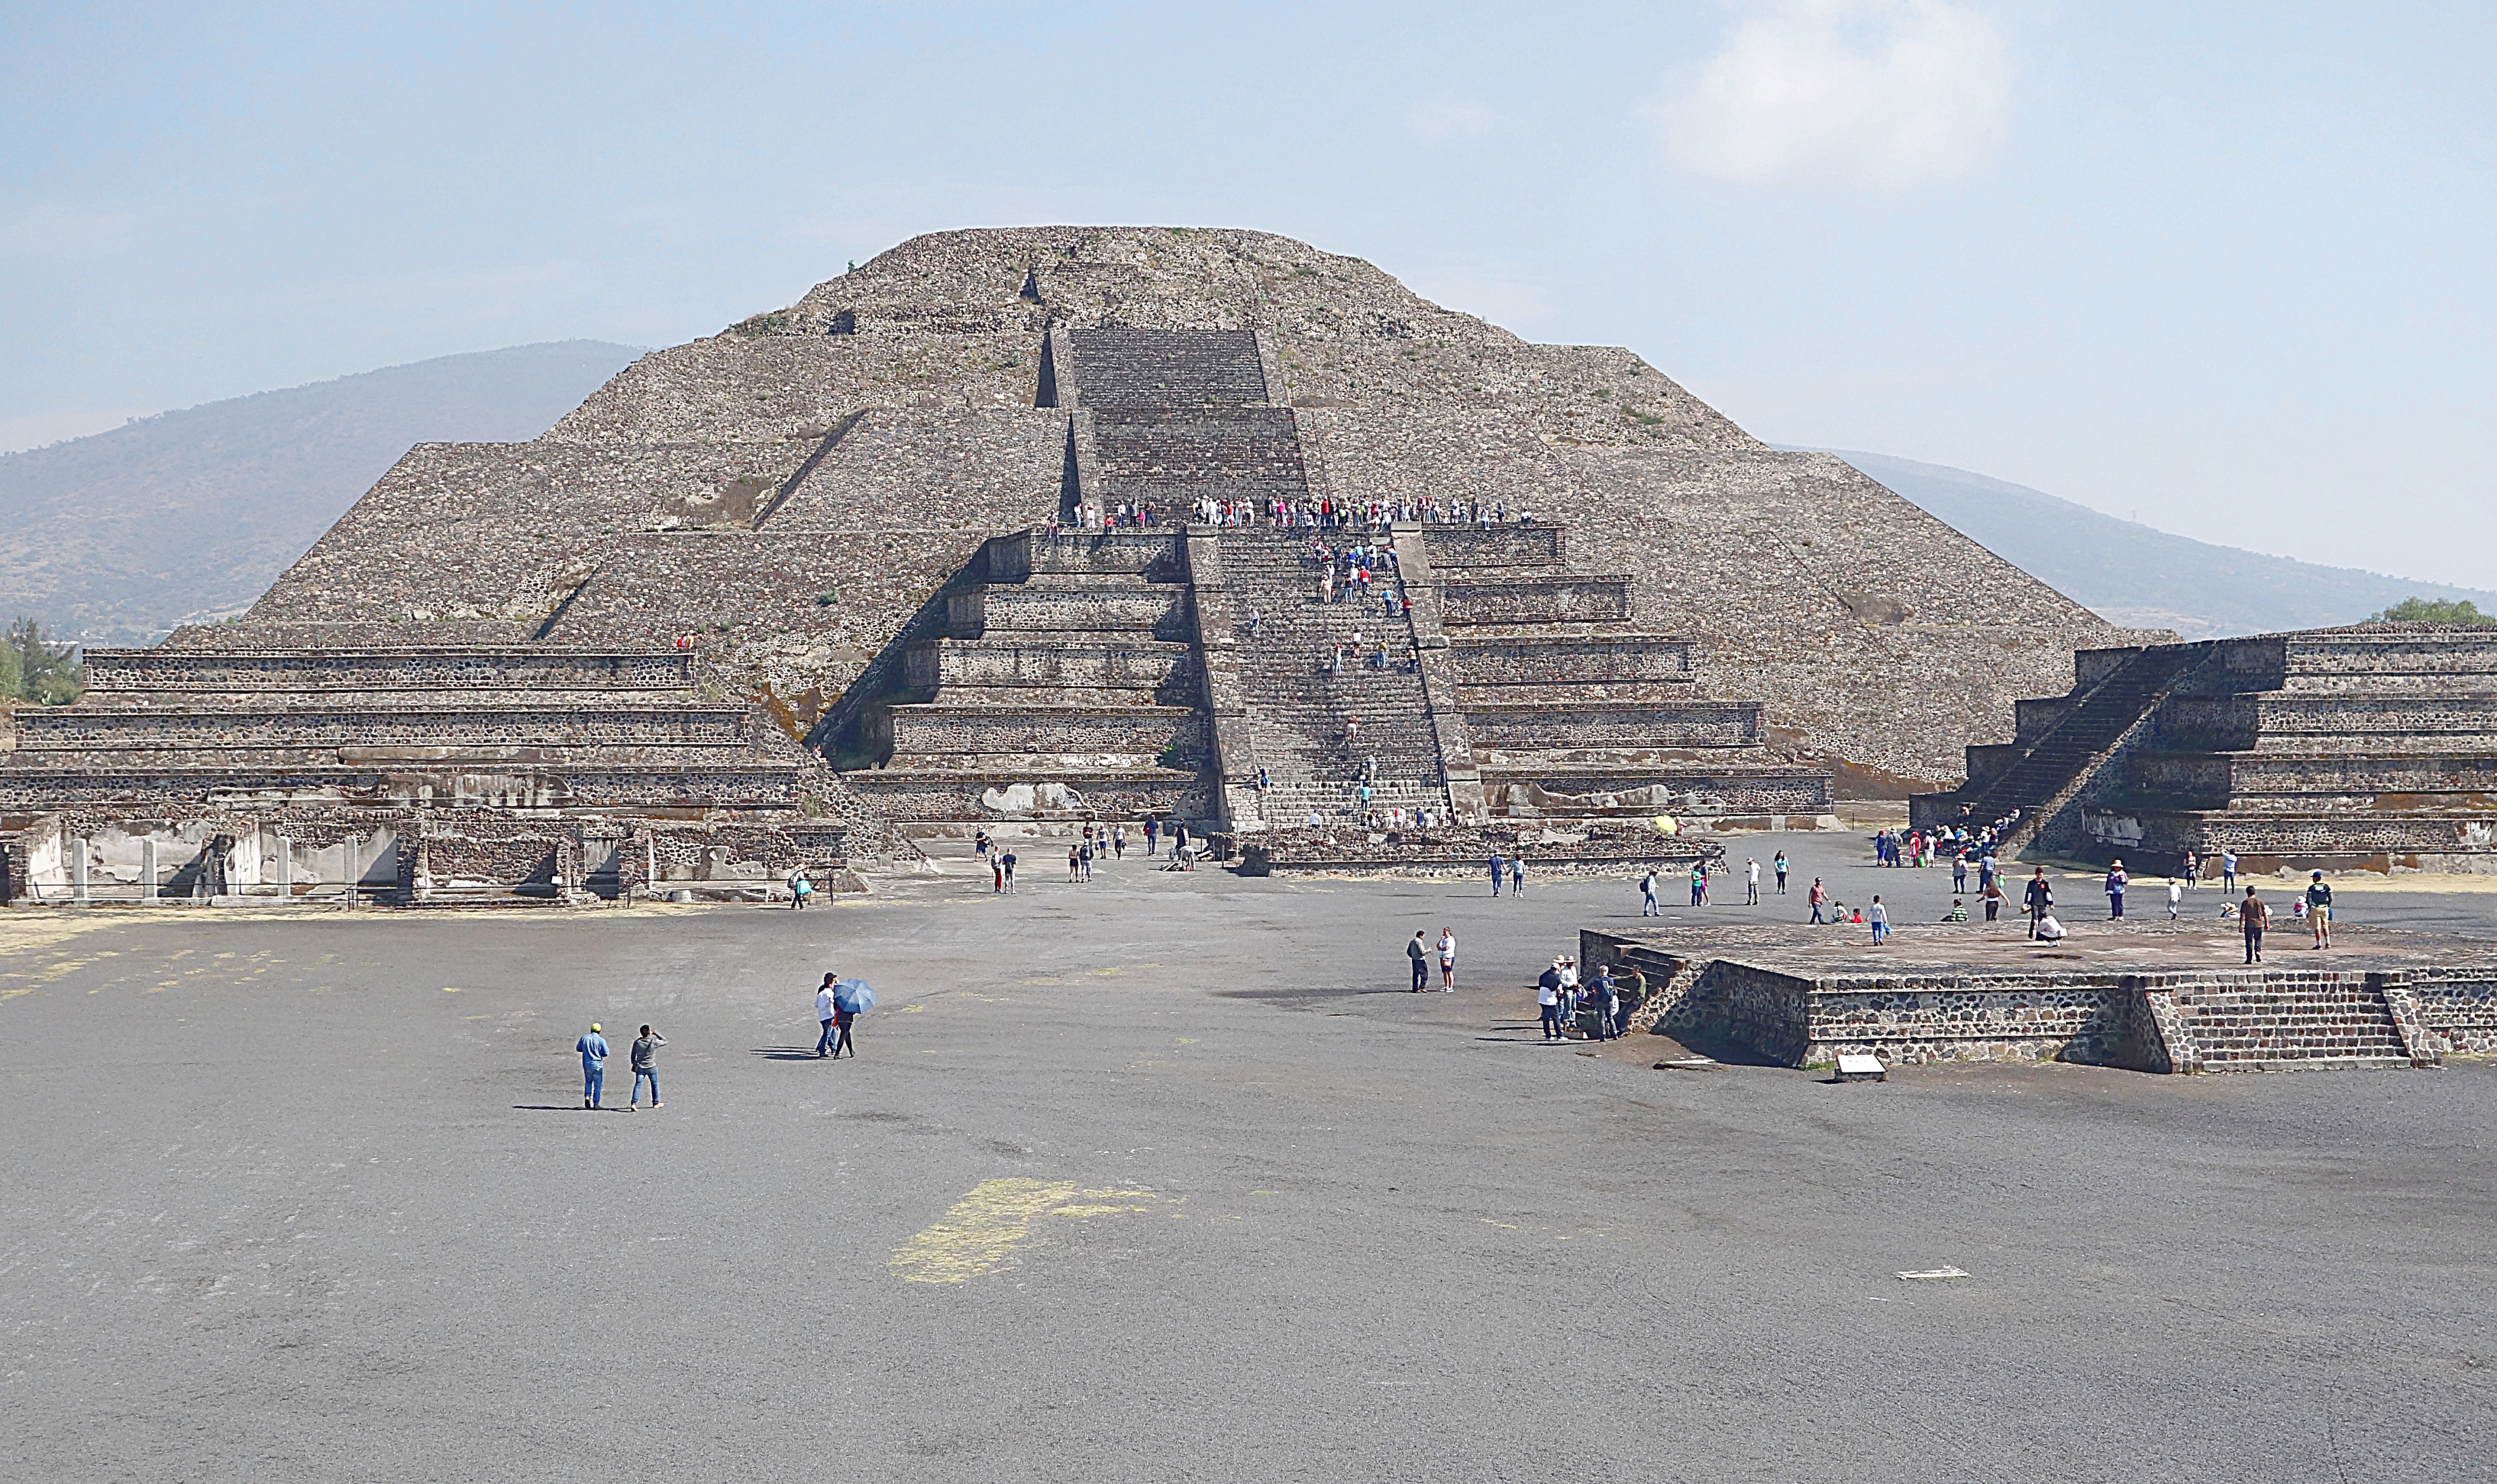 Пирамида Луны на главной пл. культового центра ацтеков - зоны Теотиуакан в Мехико. Фото Морошкина В.В.